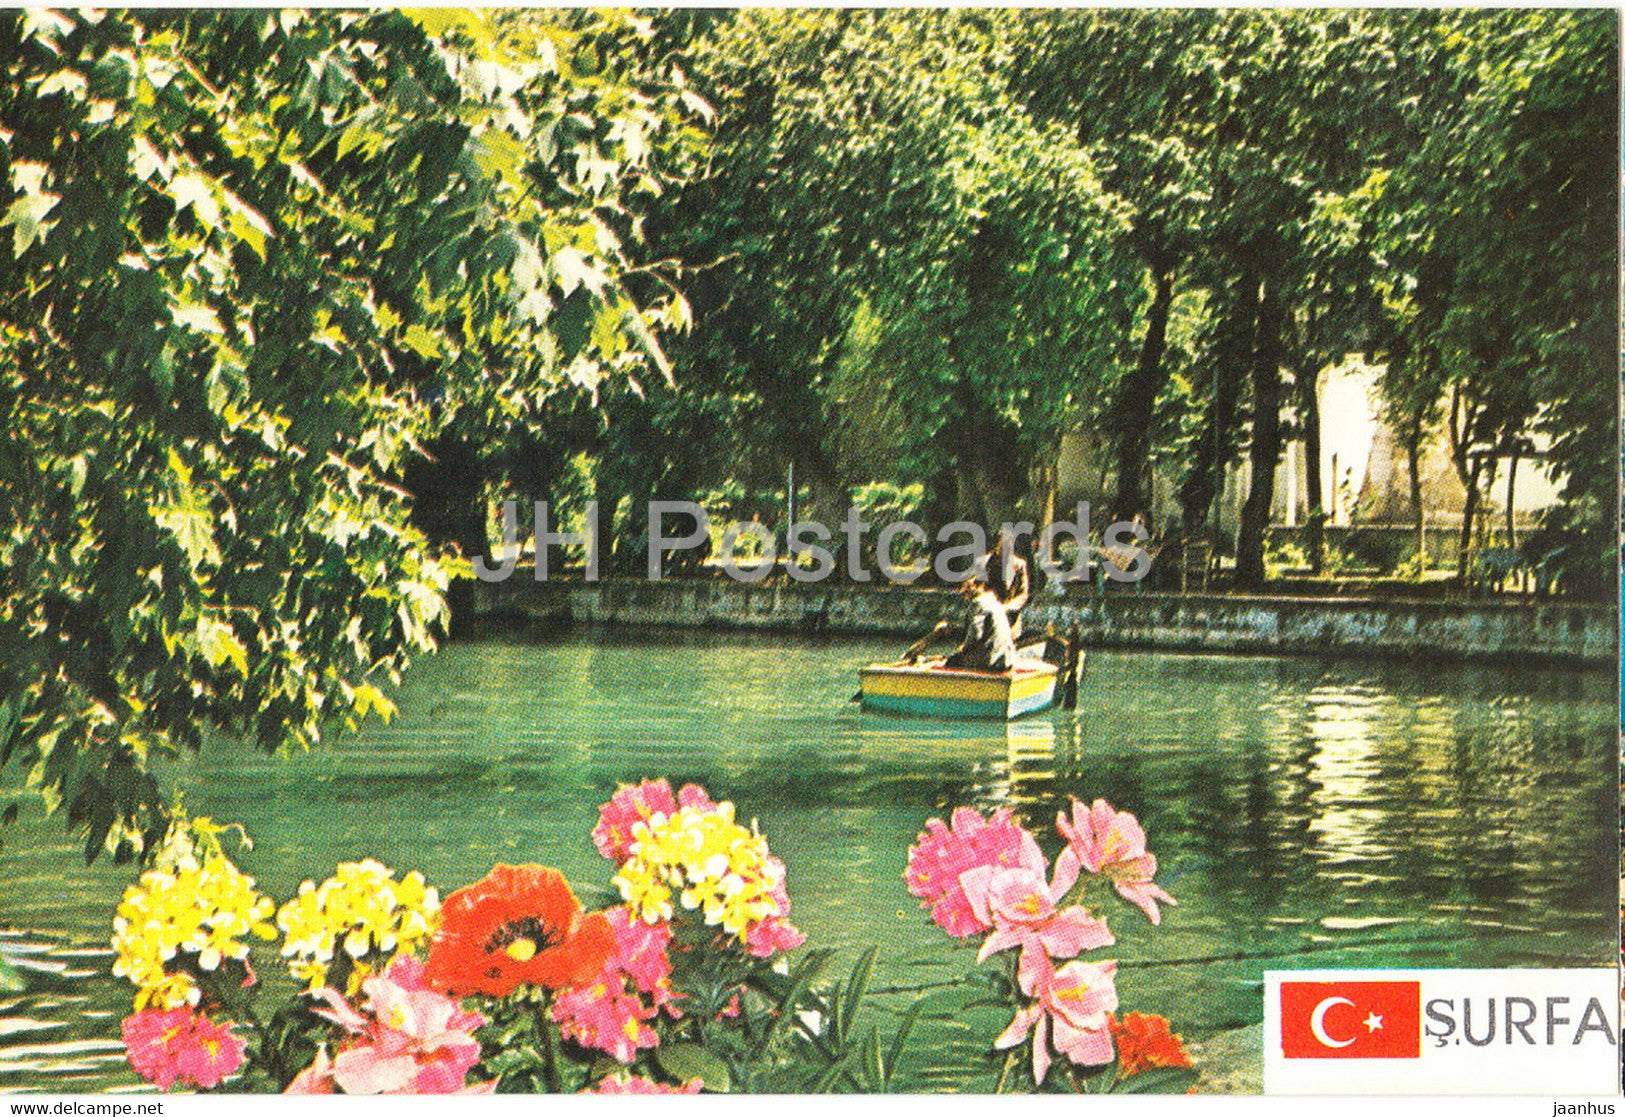 S Urfa - pond - 1987 - Turkey - used - JH Postcards